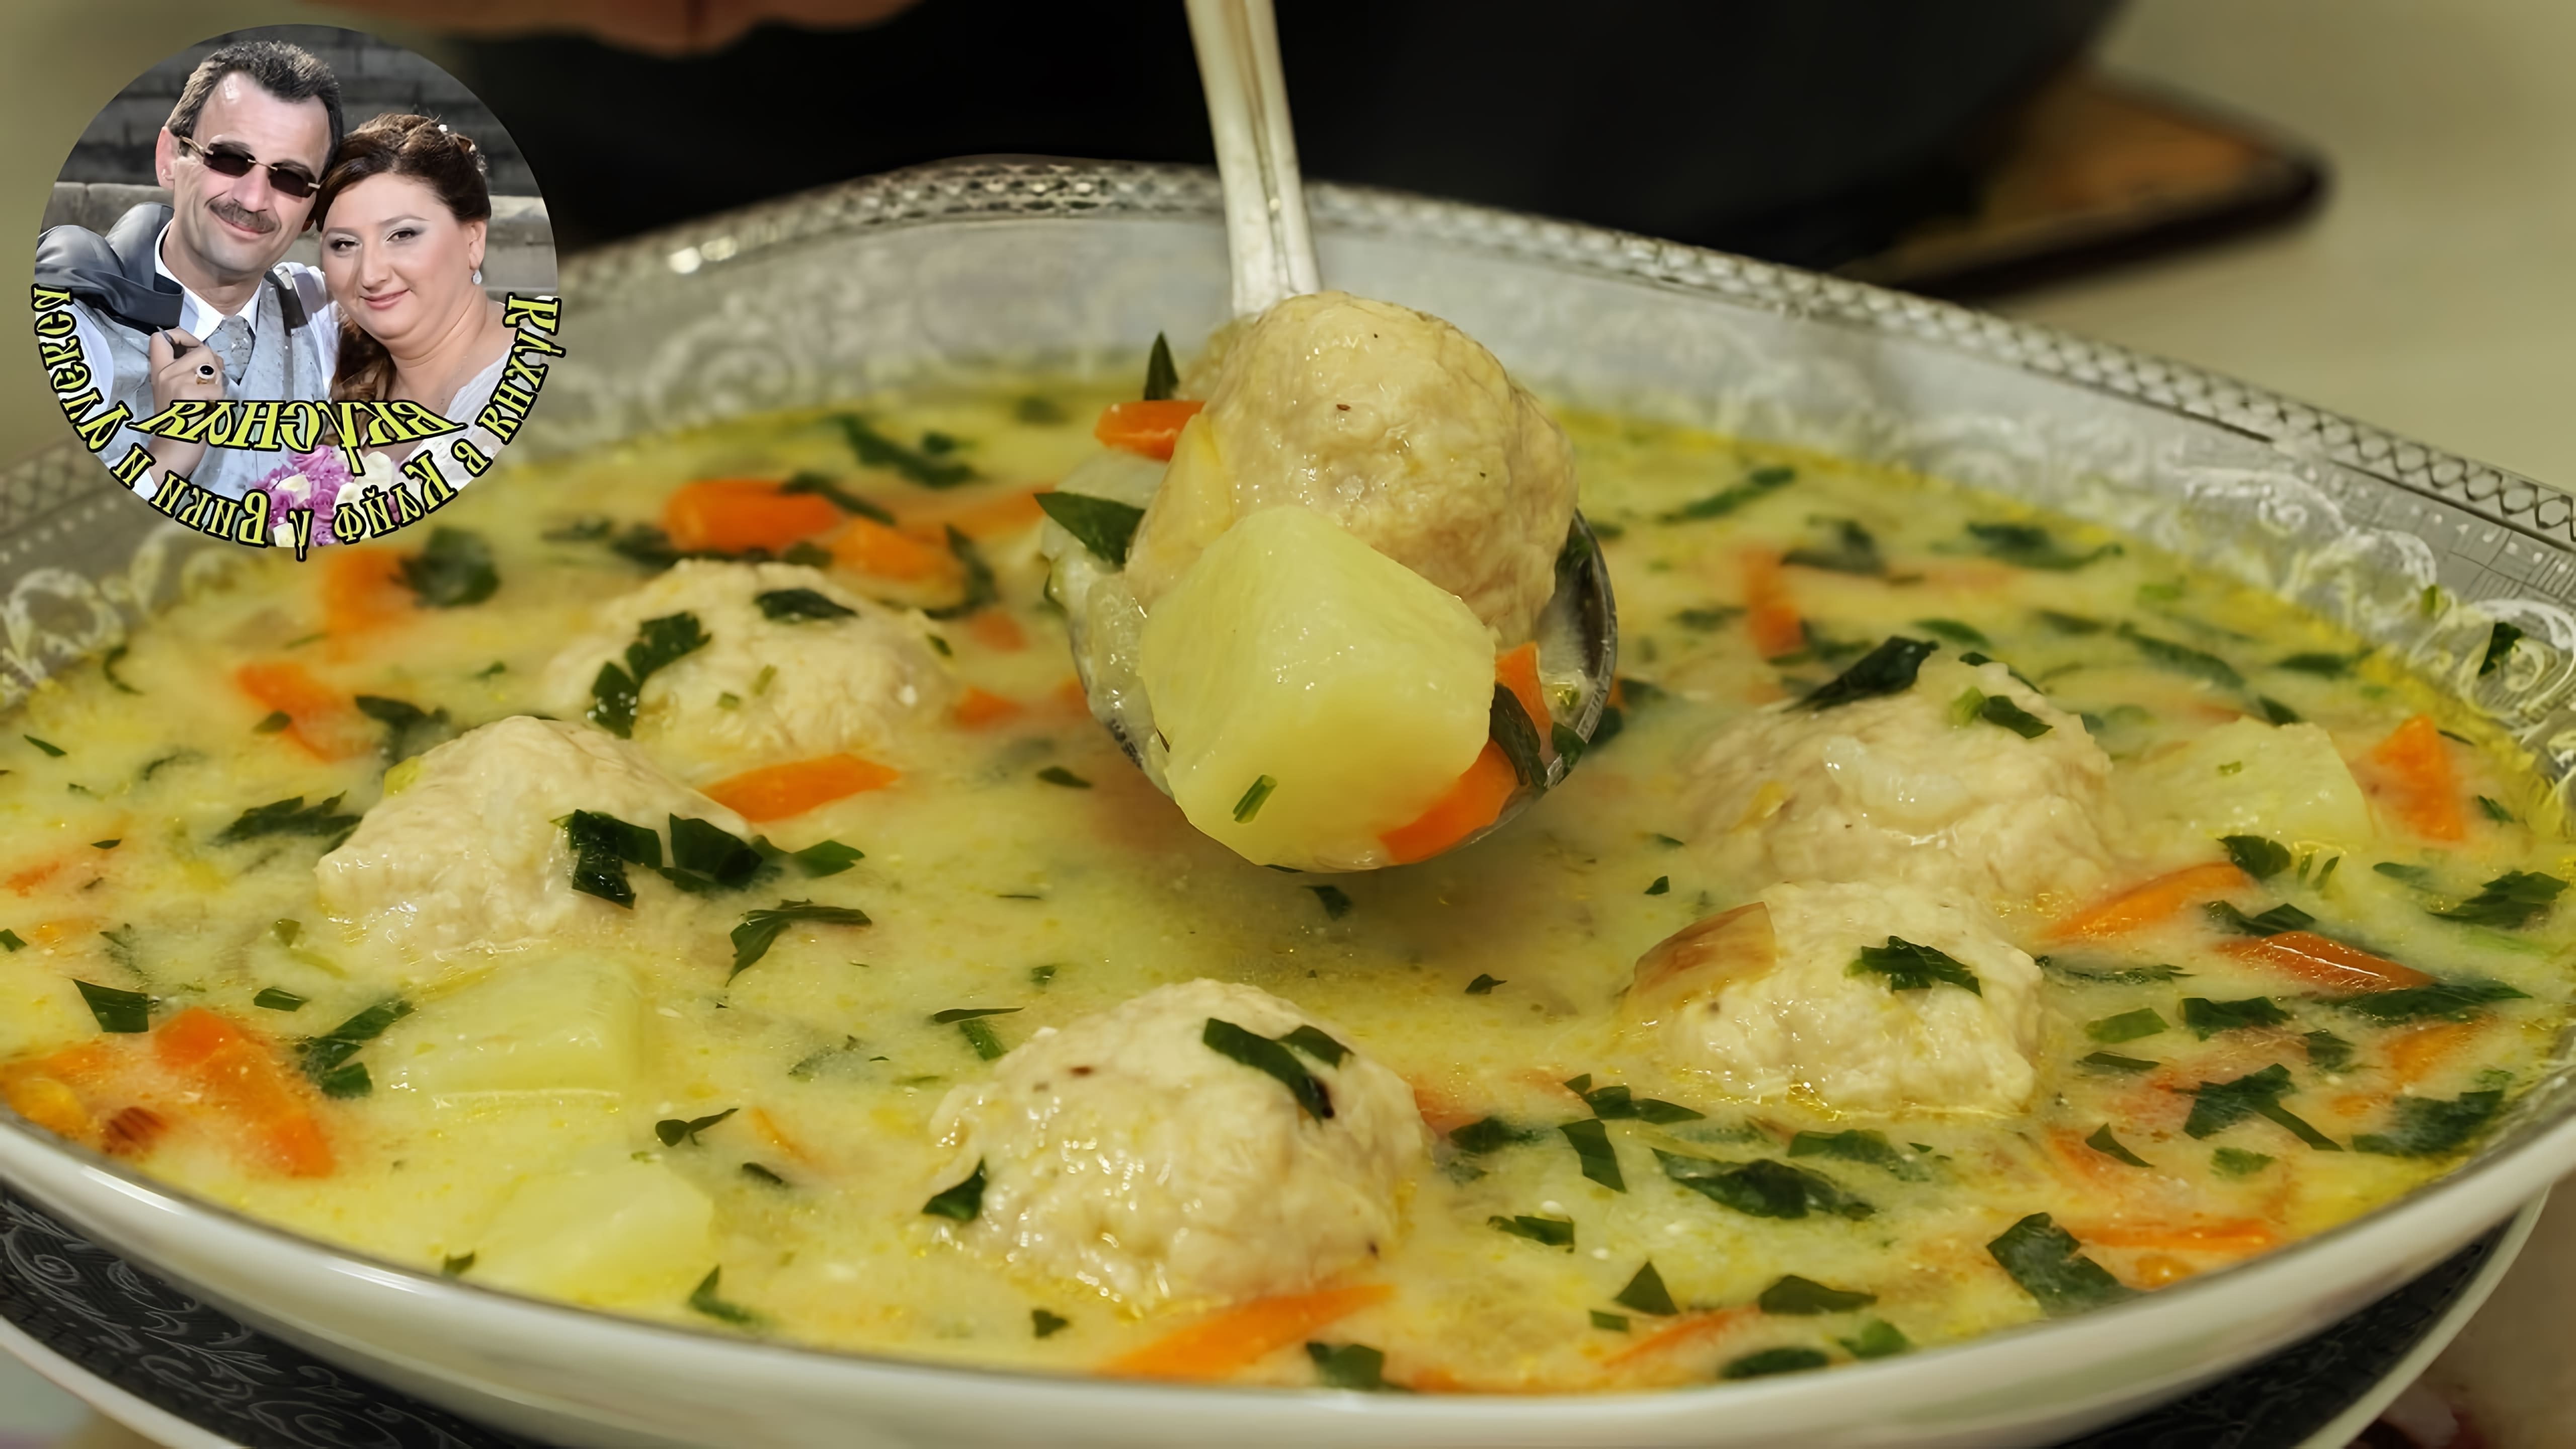 В этом видео демонстрируется процесс приготовления болгарского супа с мясными шариками